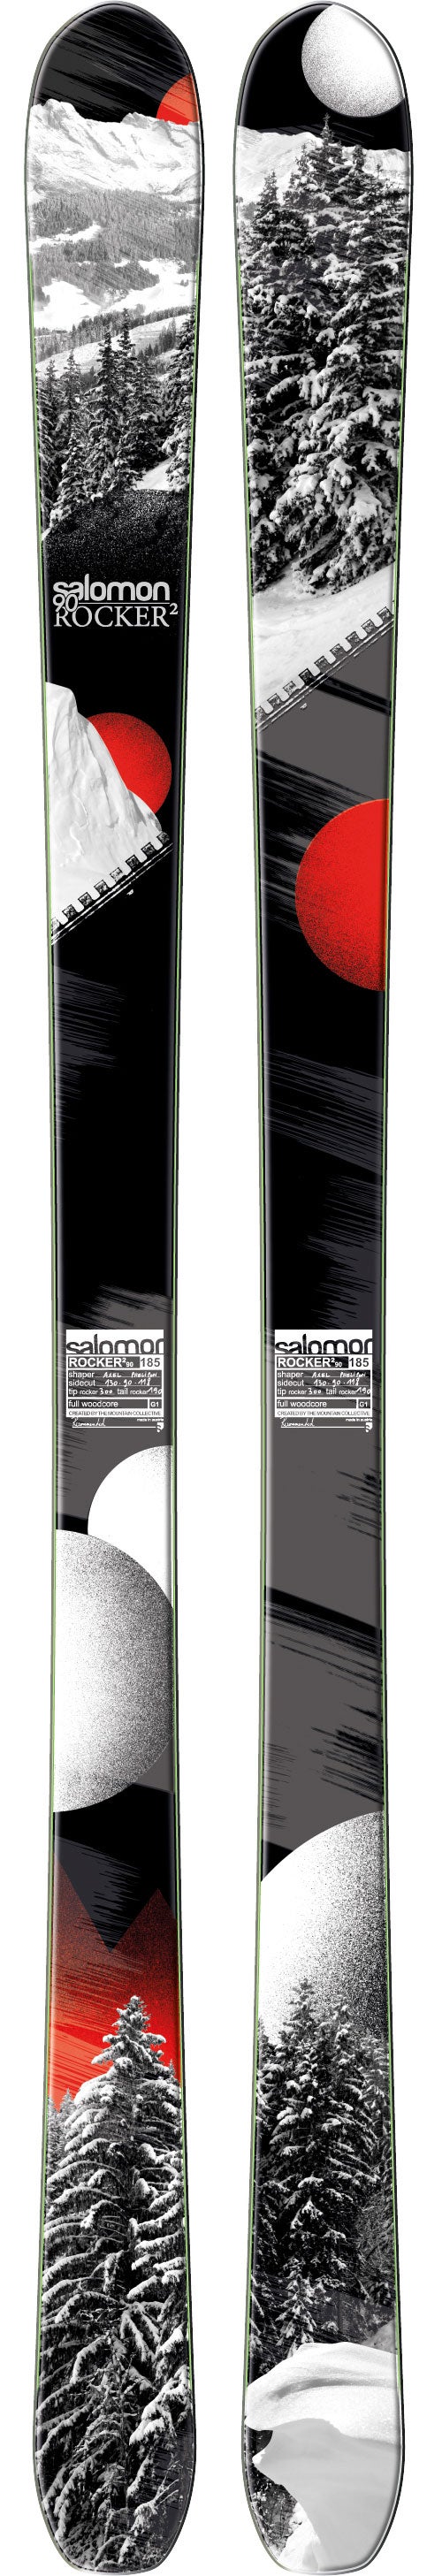 Salomon Rocker2 (2013) - Mag